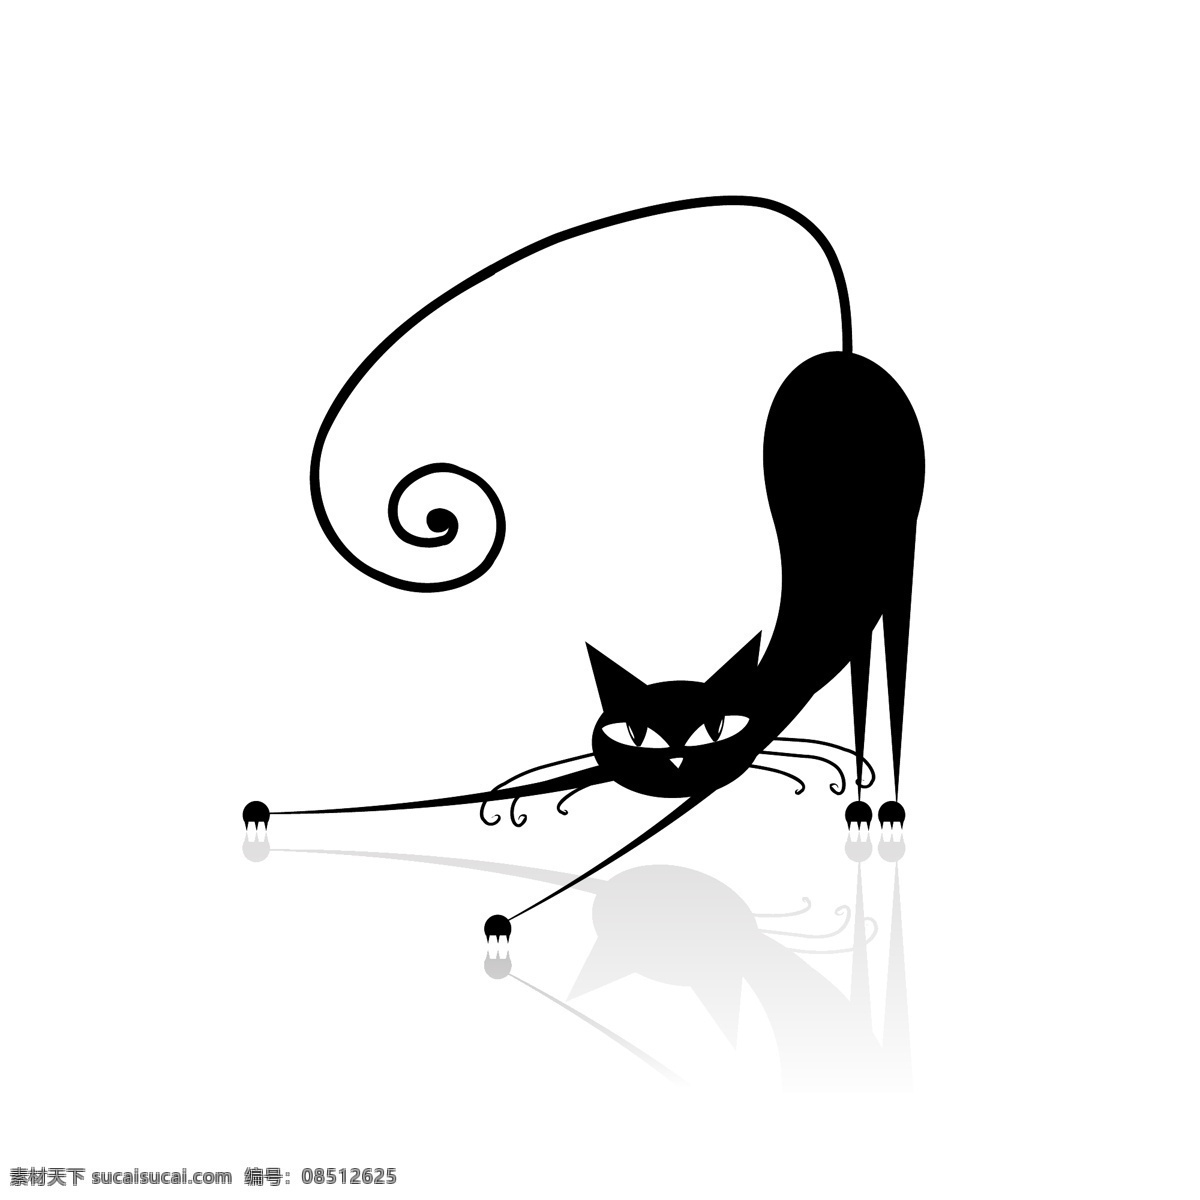 黑色的猫 卡通 动物 可爱 卡通生物 猫 黑猫 伸懒腰 陆地动物 生物世界 矢量素材 白色